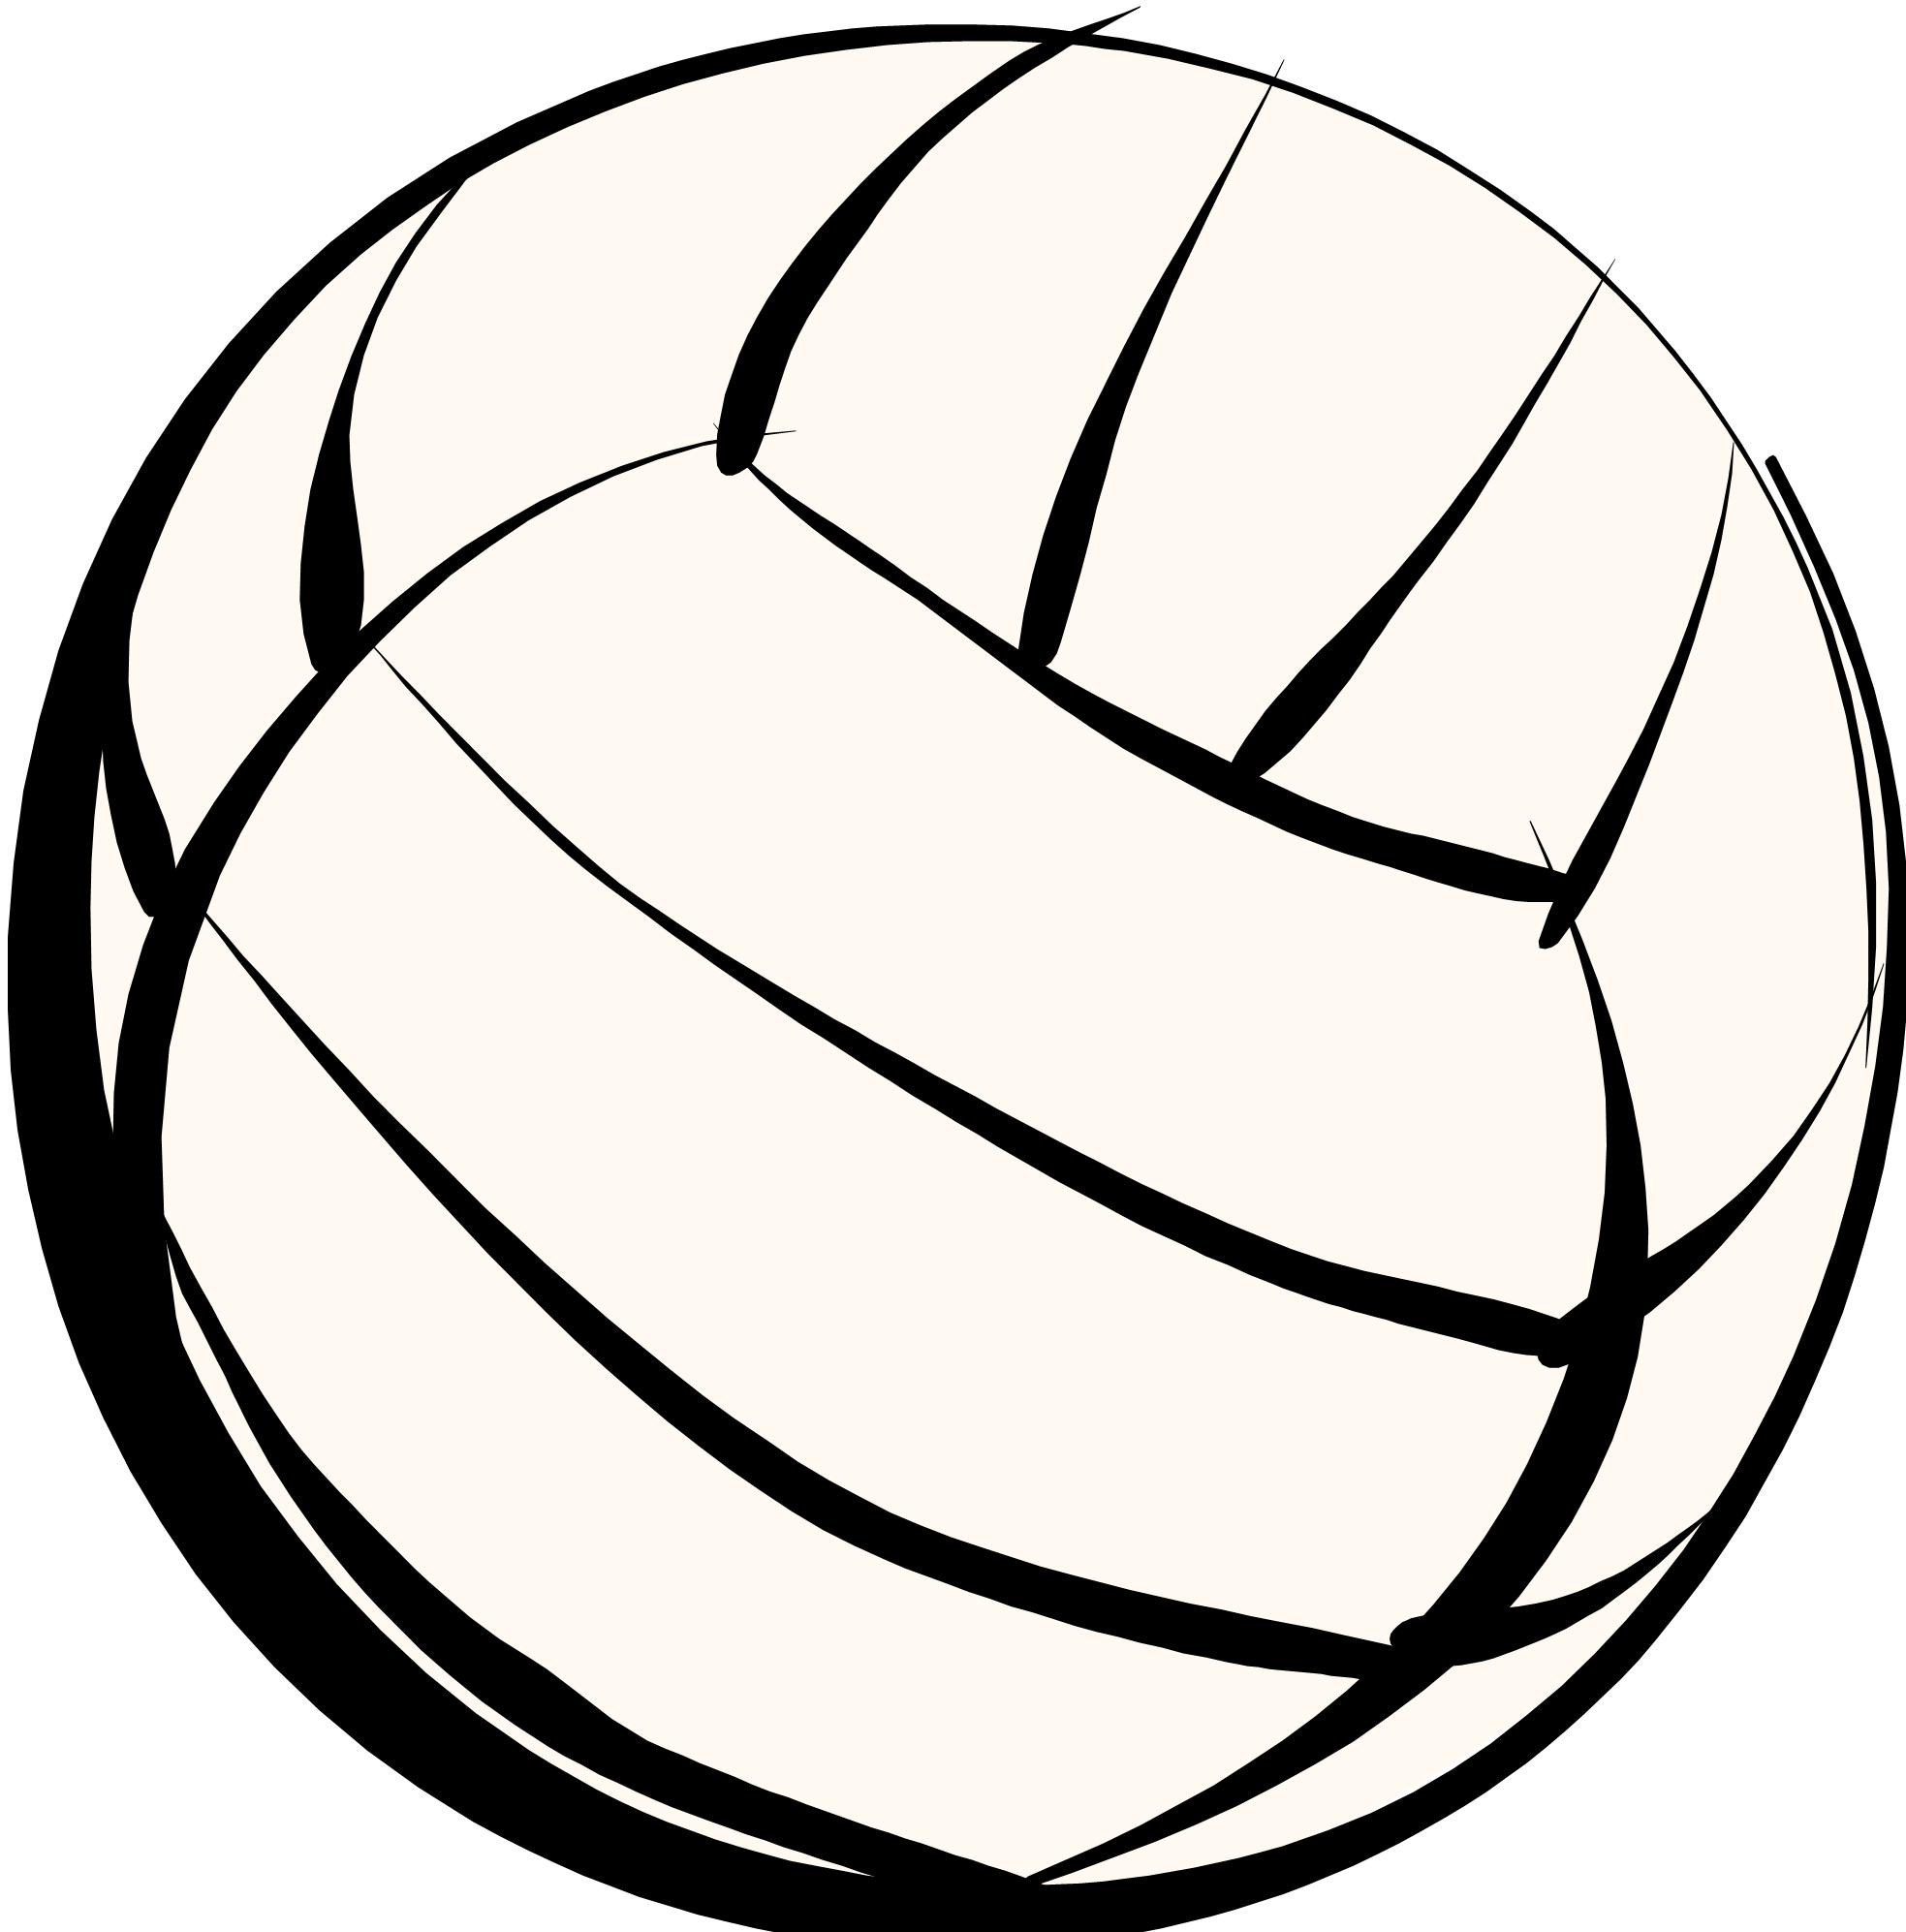 Volleyball Net Clipart